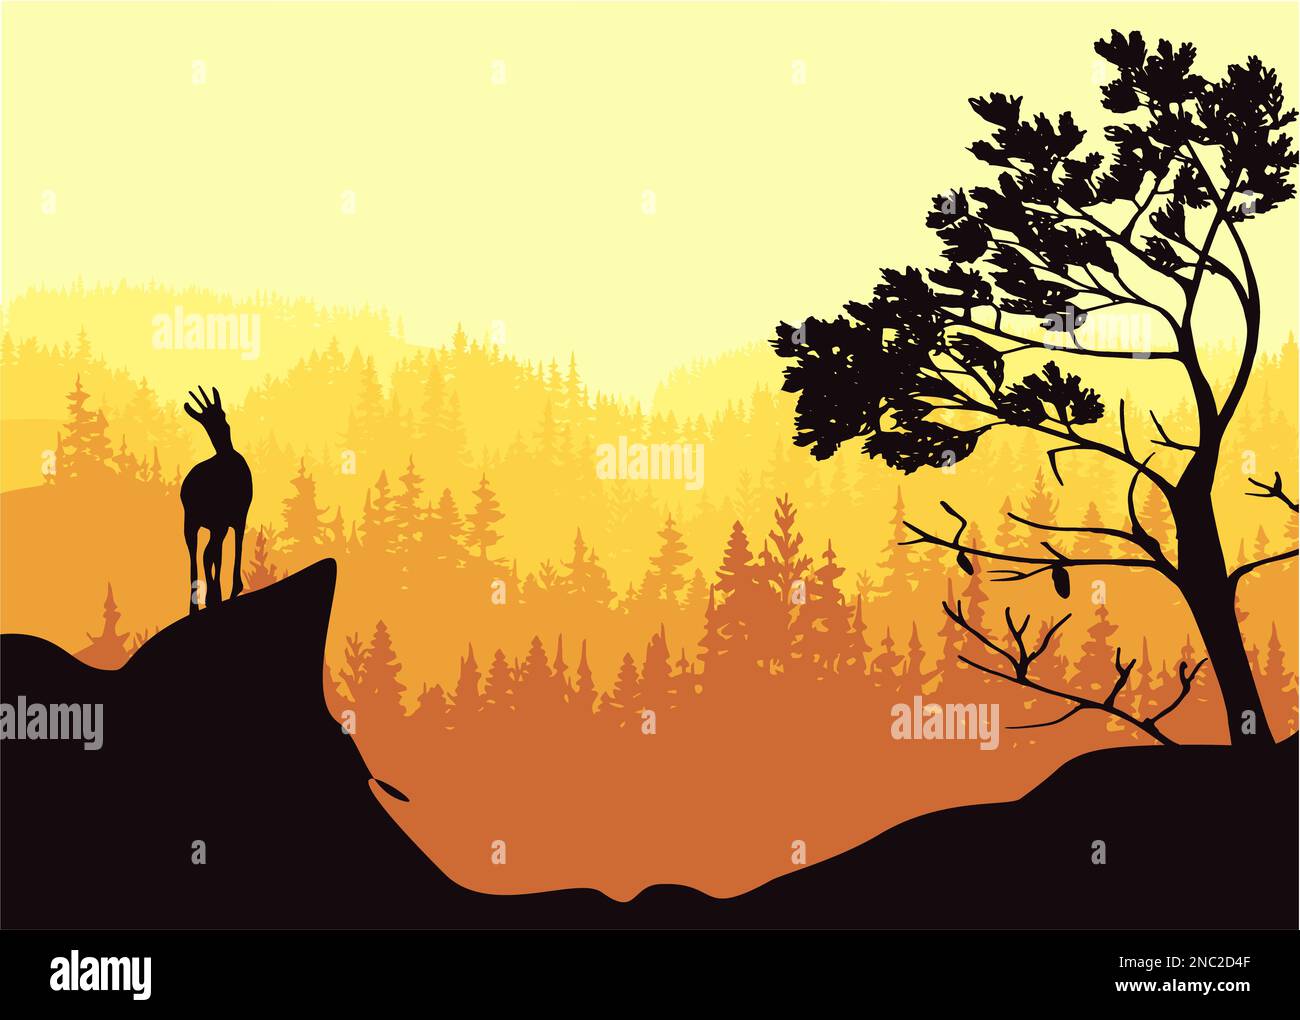 Ein Chamois steht auf einem Hügel mit Bergen und Wald im Hintergrund. Kiefer im Vordergrund. Magische nebelige Landschaft. Naturillustrierung. Stockfoto